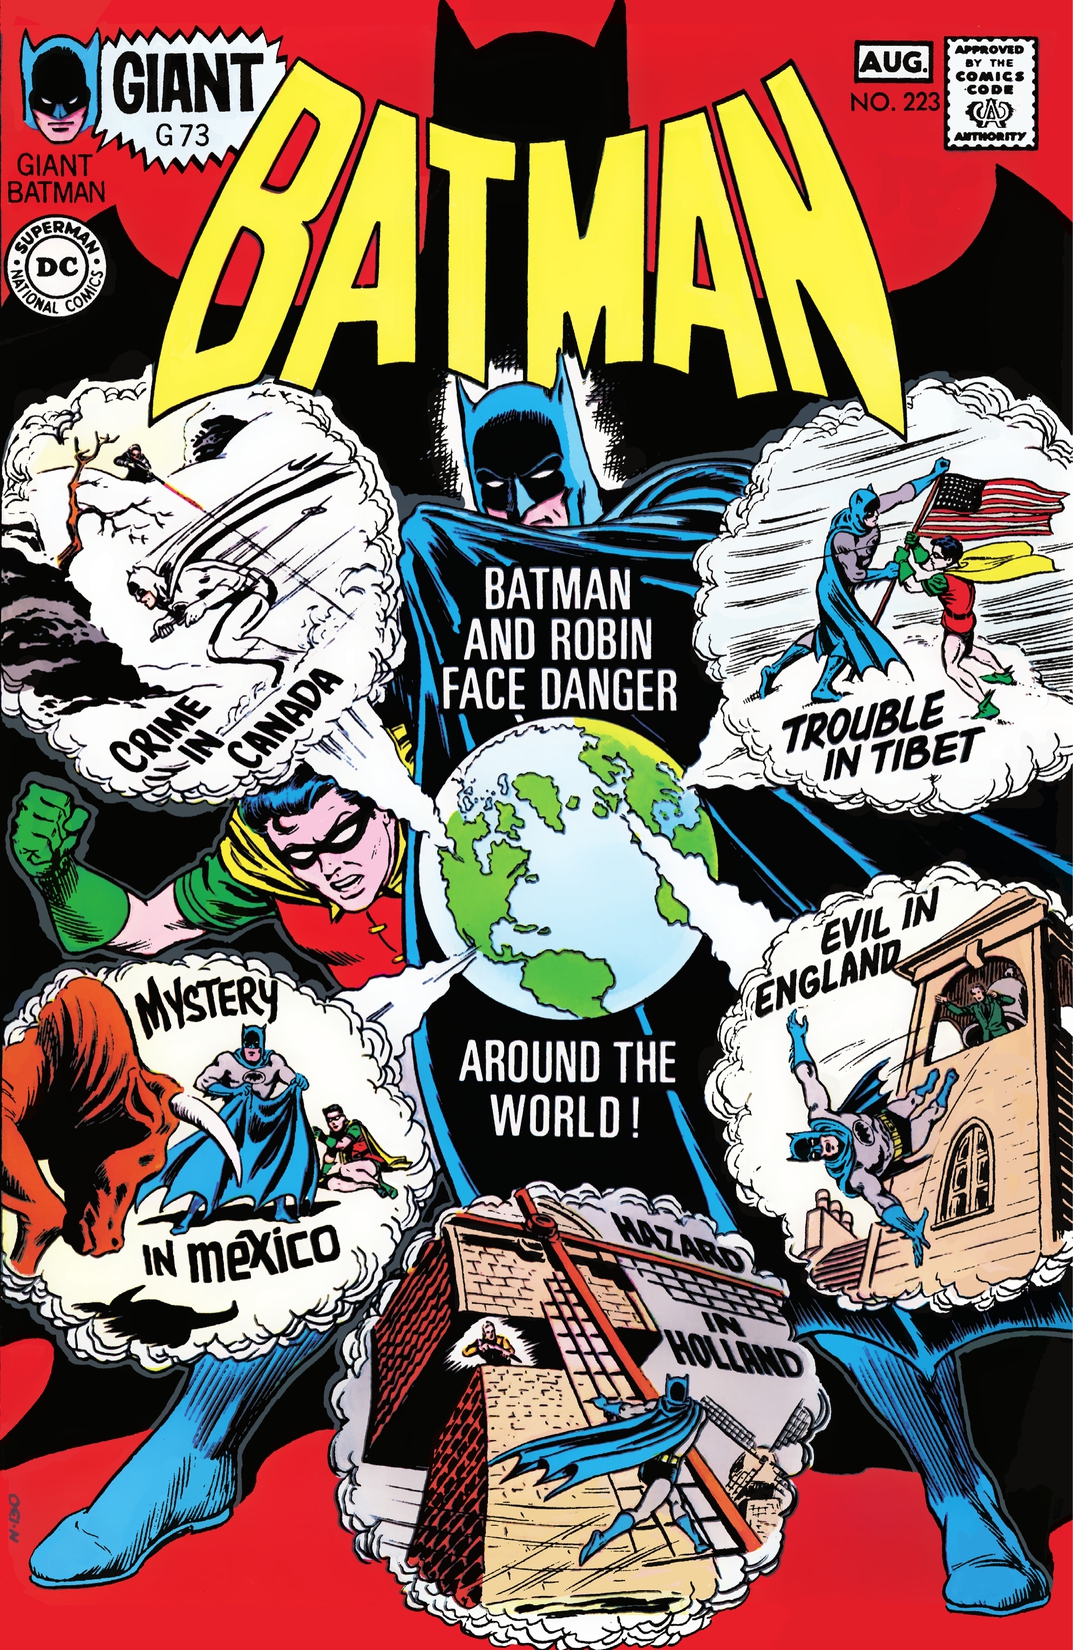 Batman (1940-2011) #223 preview images